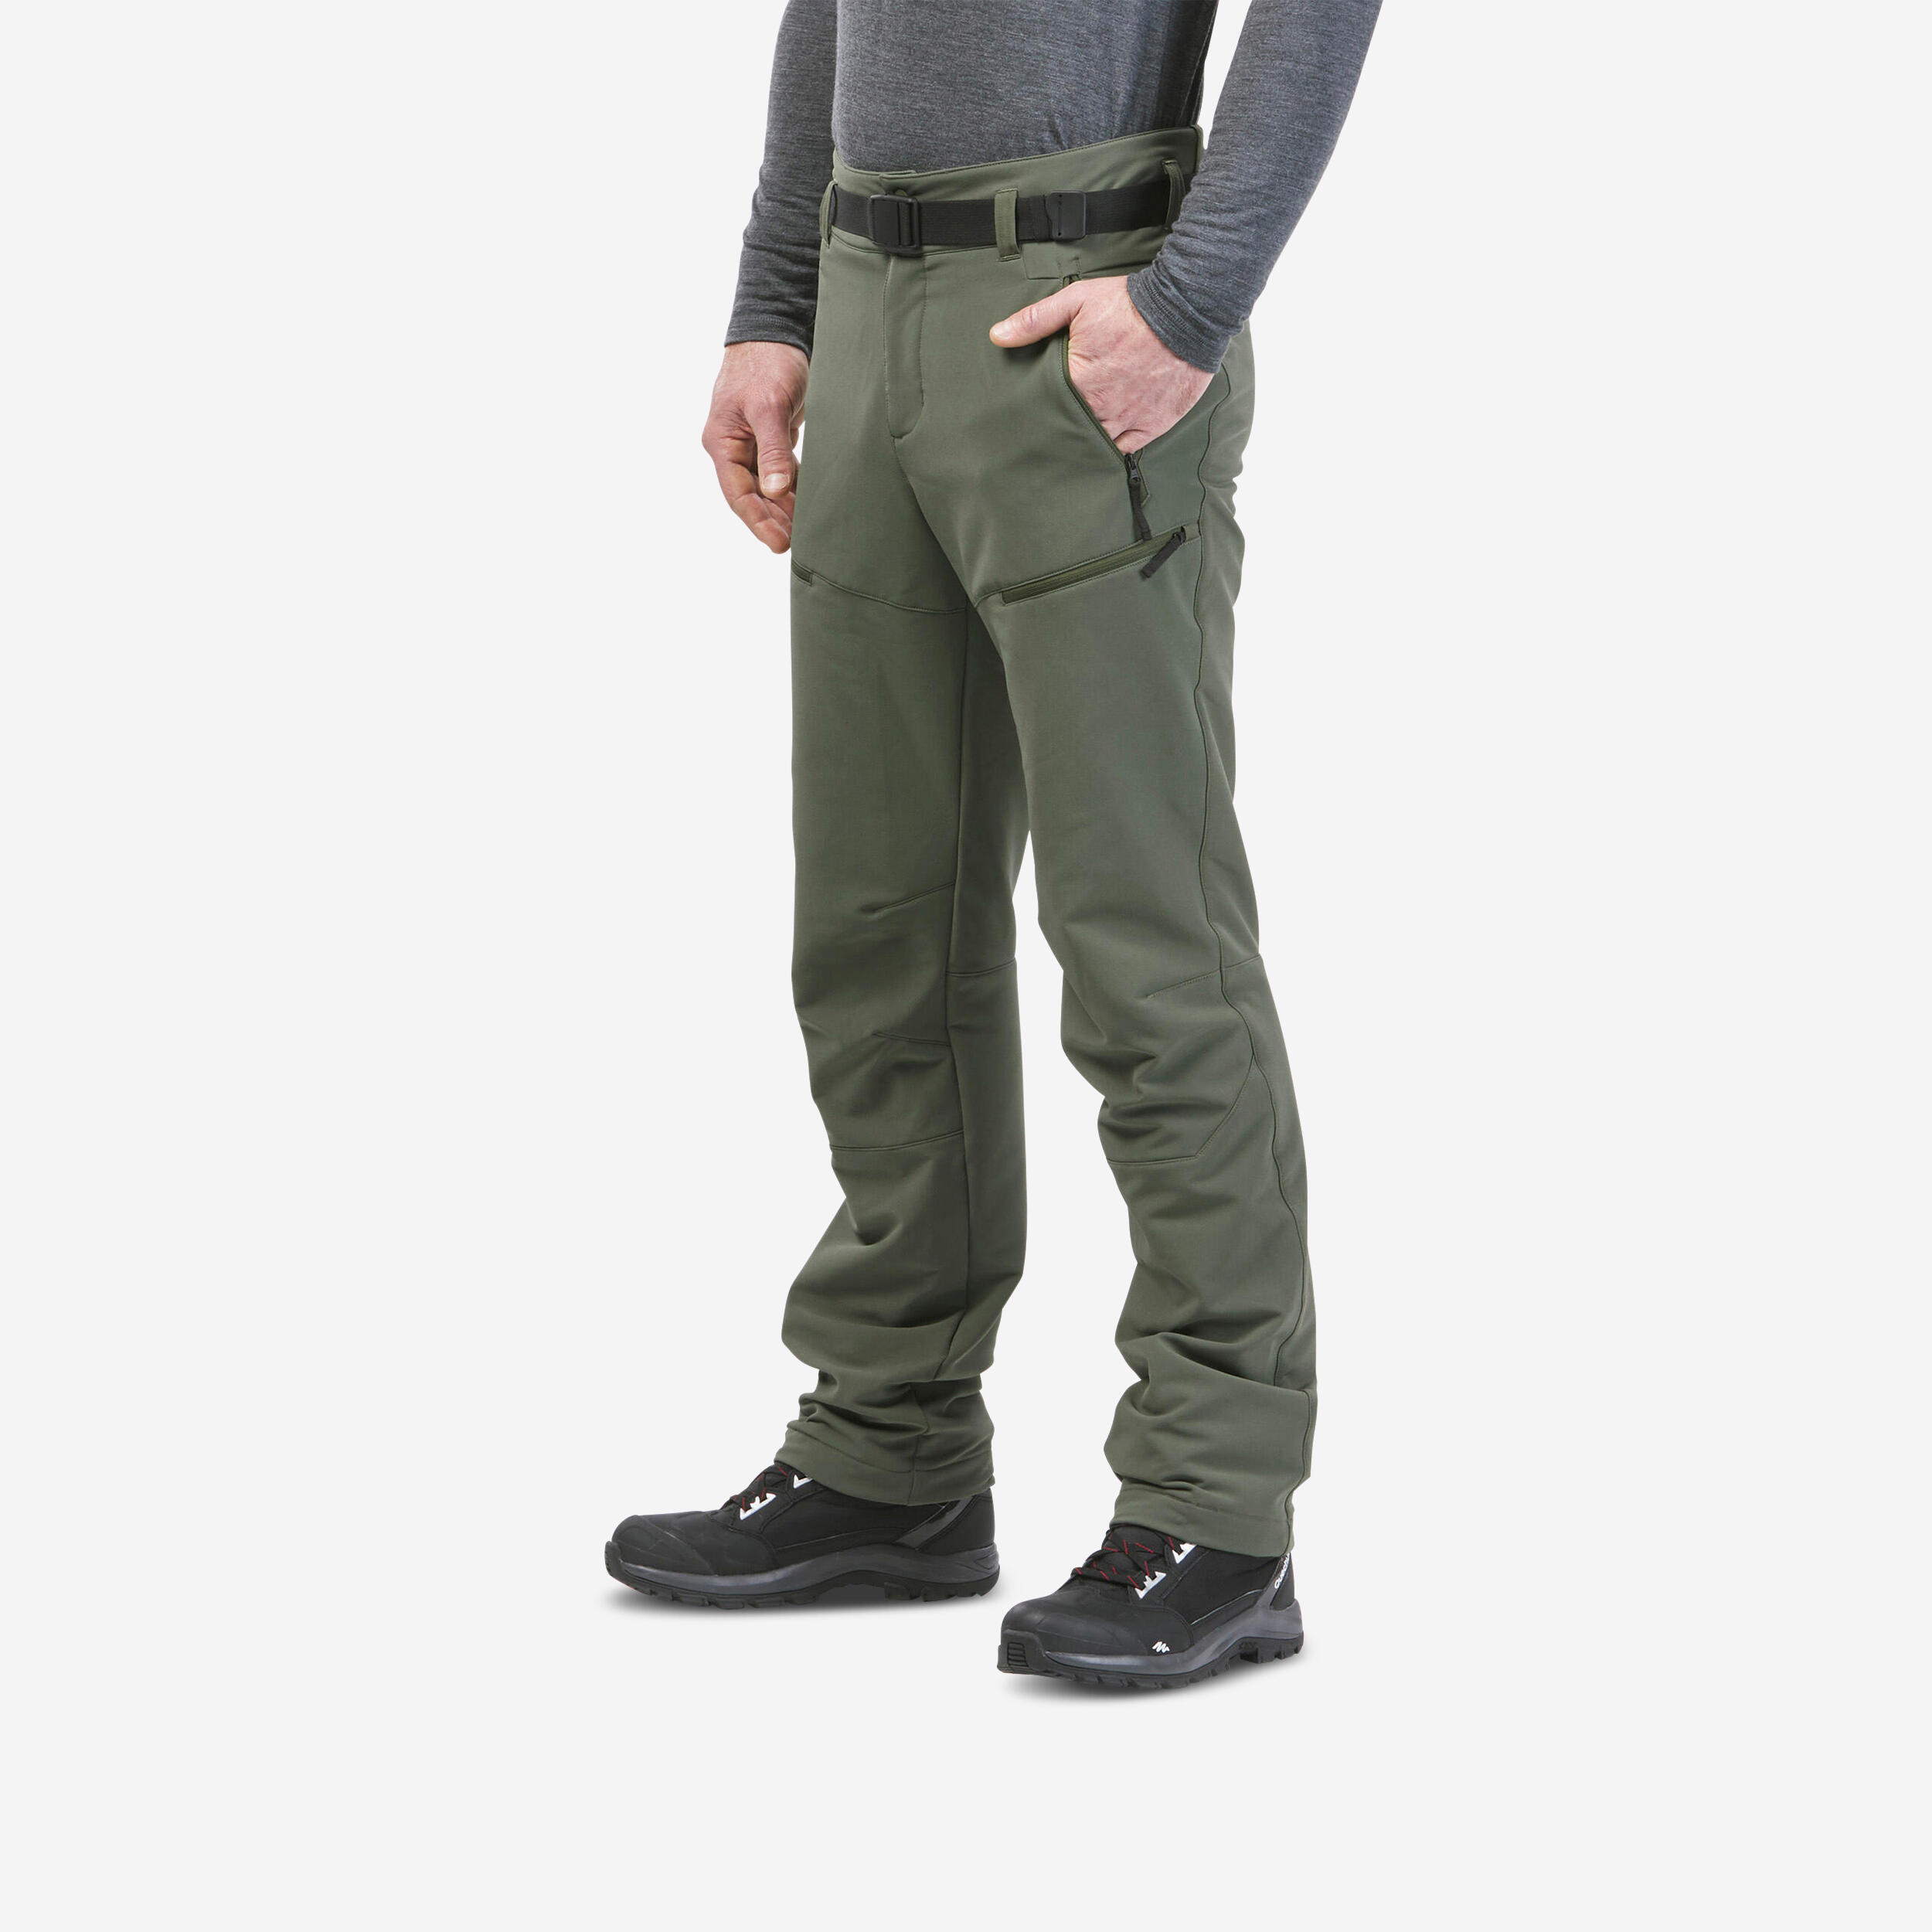 Men's Tactical Pants Combat QuickDry Lightweight Waterproof Cargo Hiking  Pants | eBay